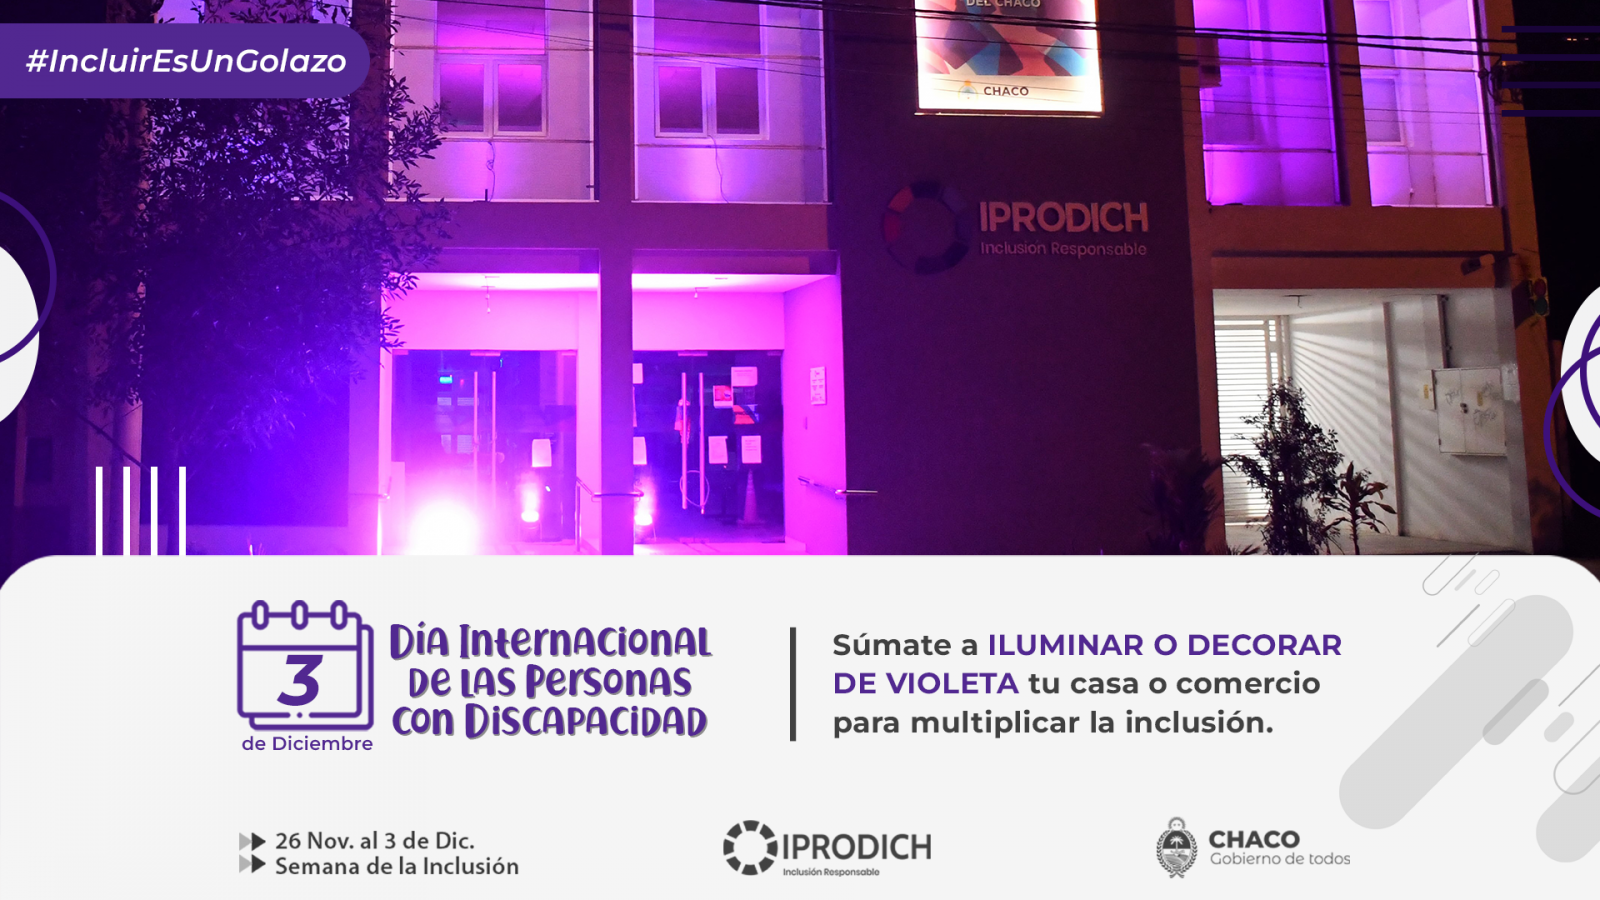 Placa gráfica con información de invitación al público para iluminar o decorar de violeta su hogar o comercio por el Día de las Personas con Discapacidad